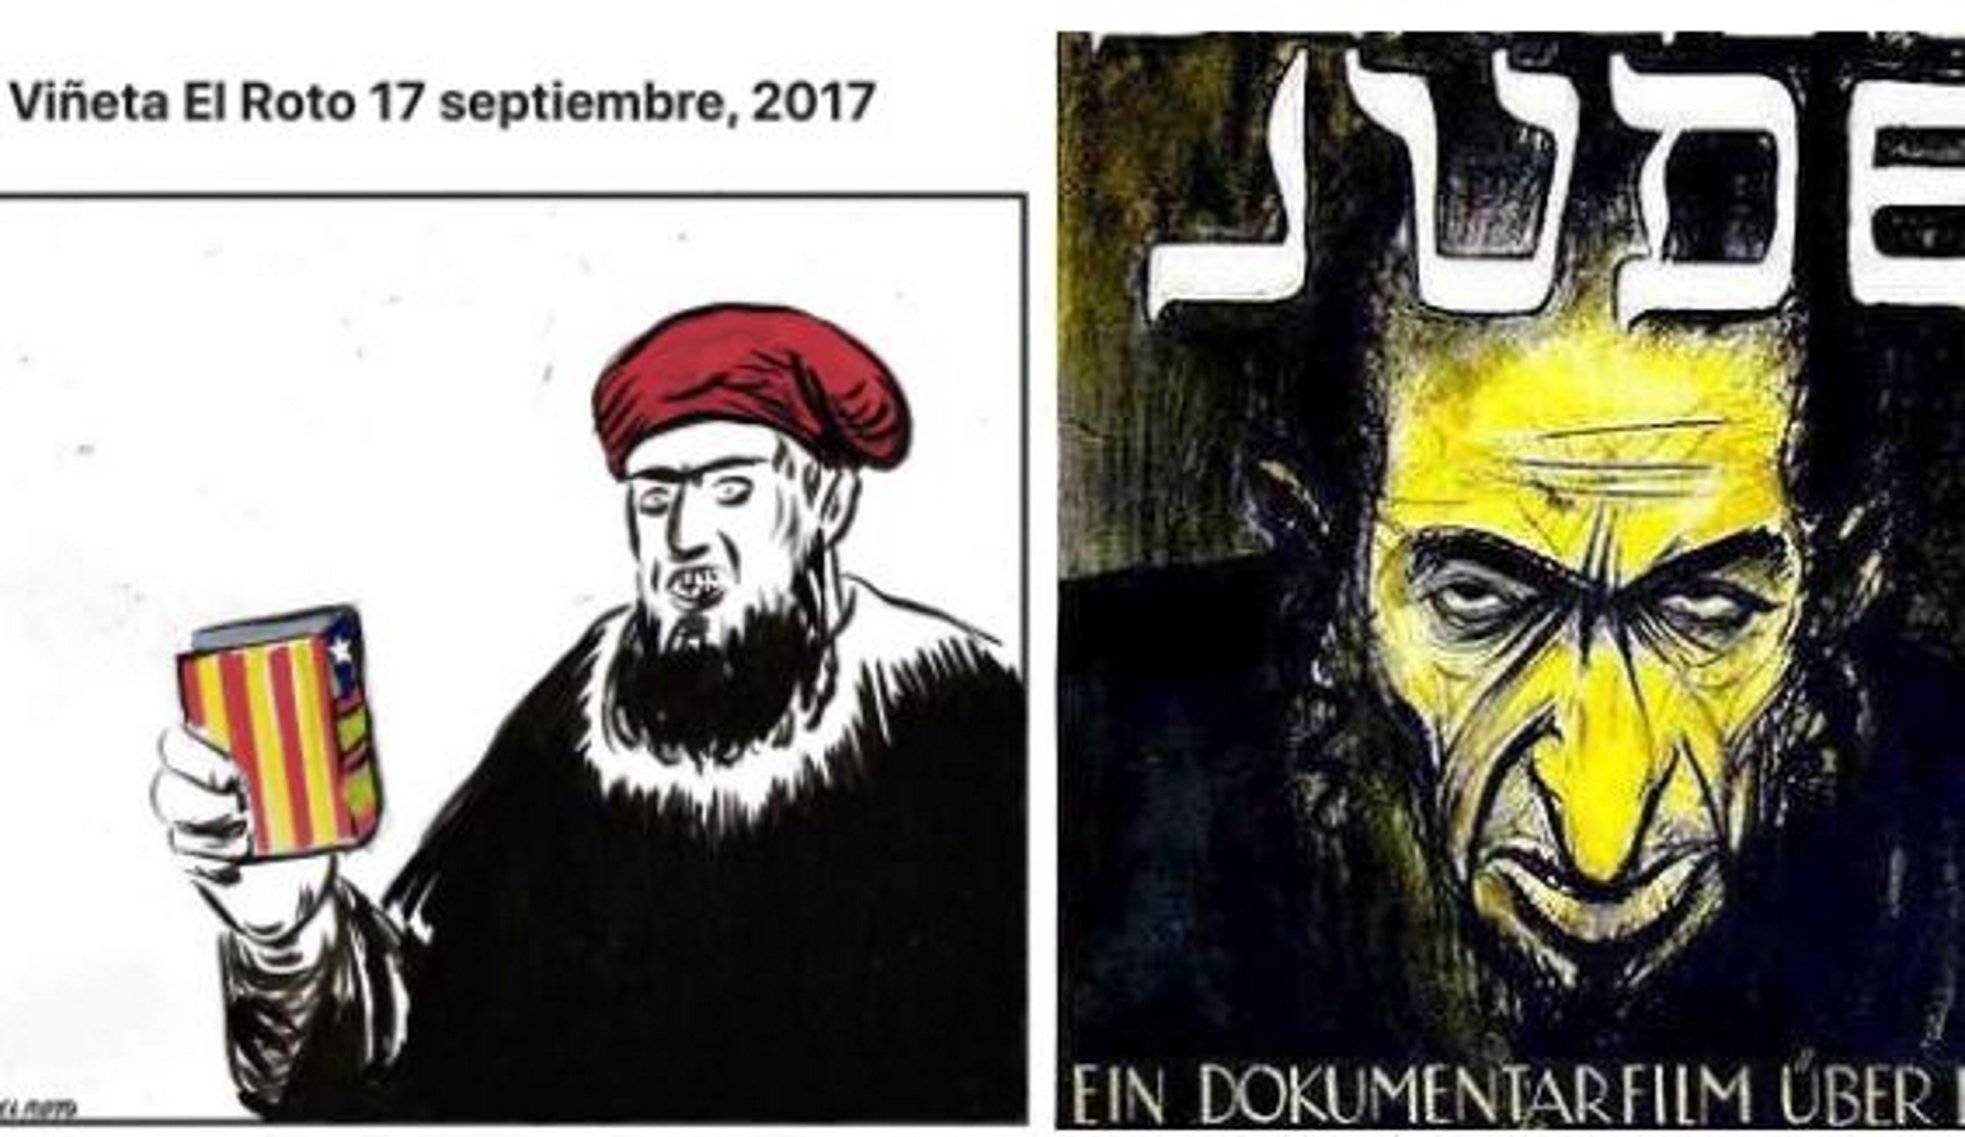 Acusen 'El Roto' d'usar els tòpics antisemites contra els catalans